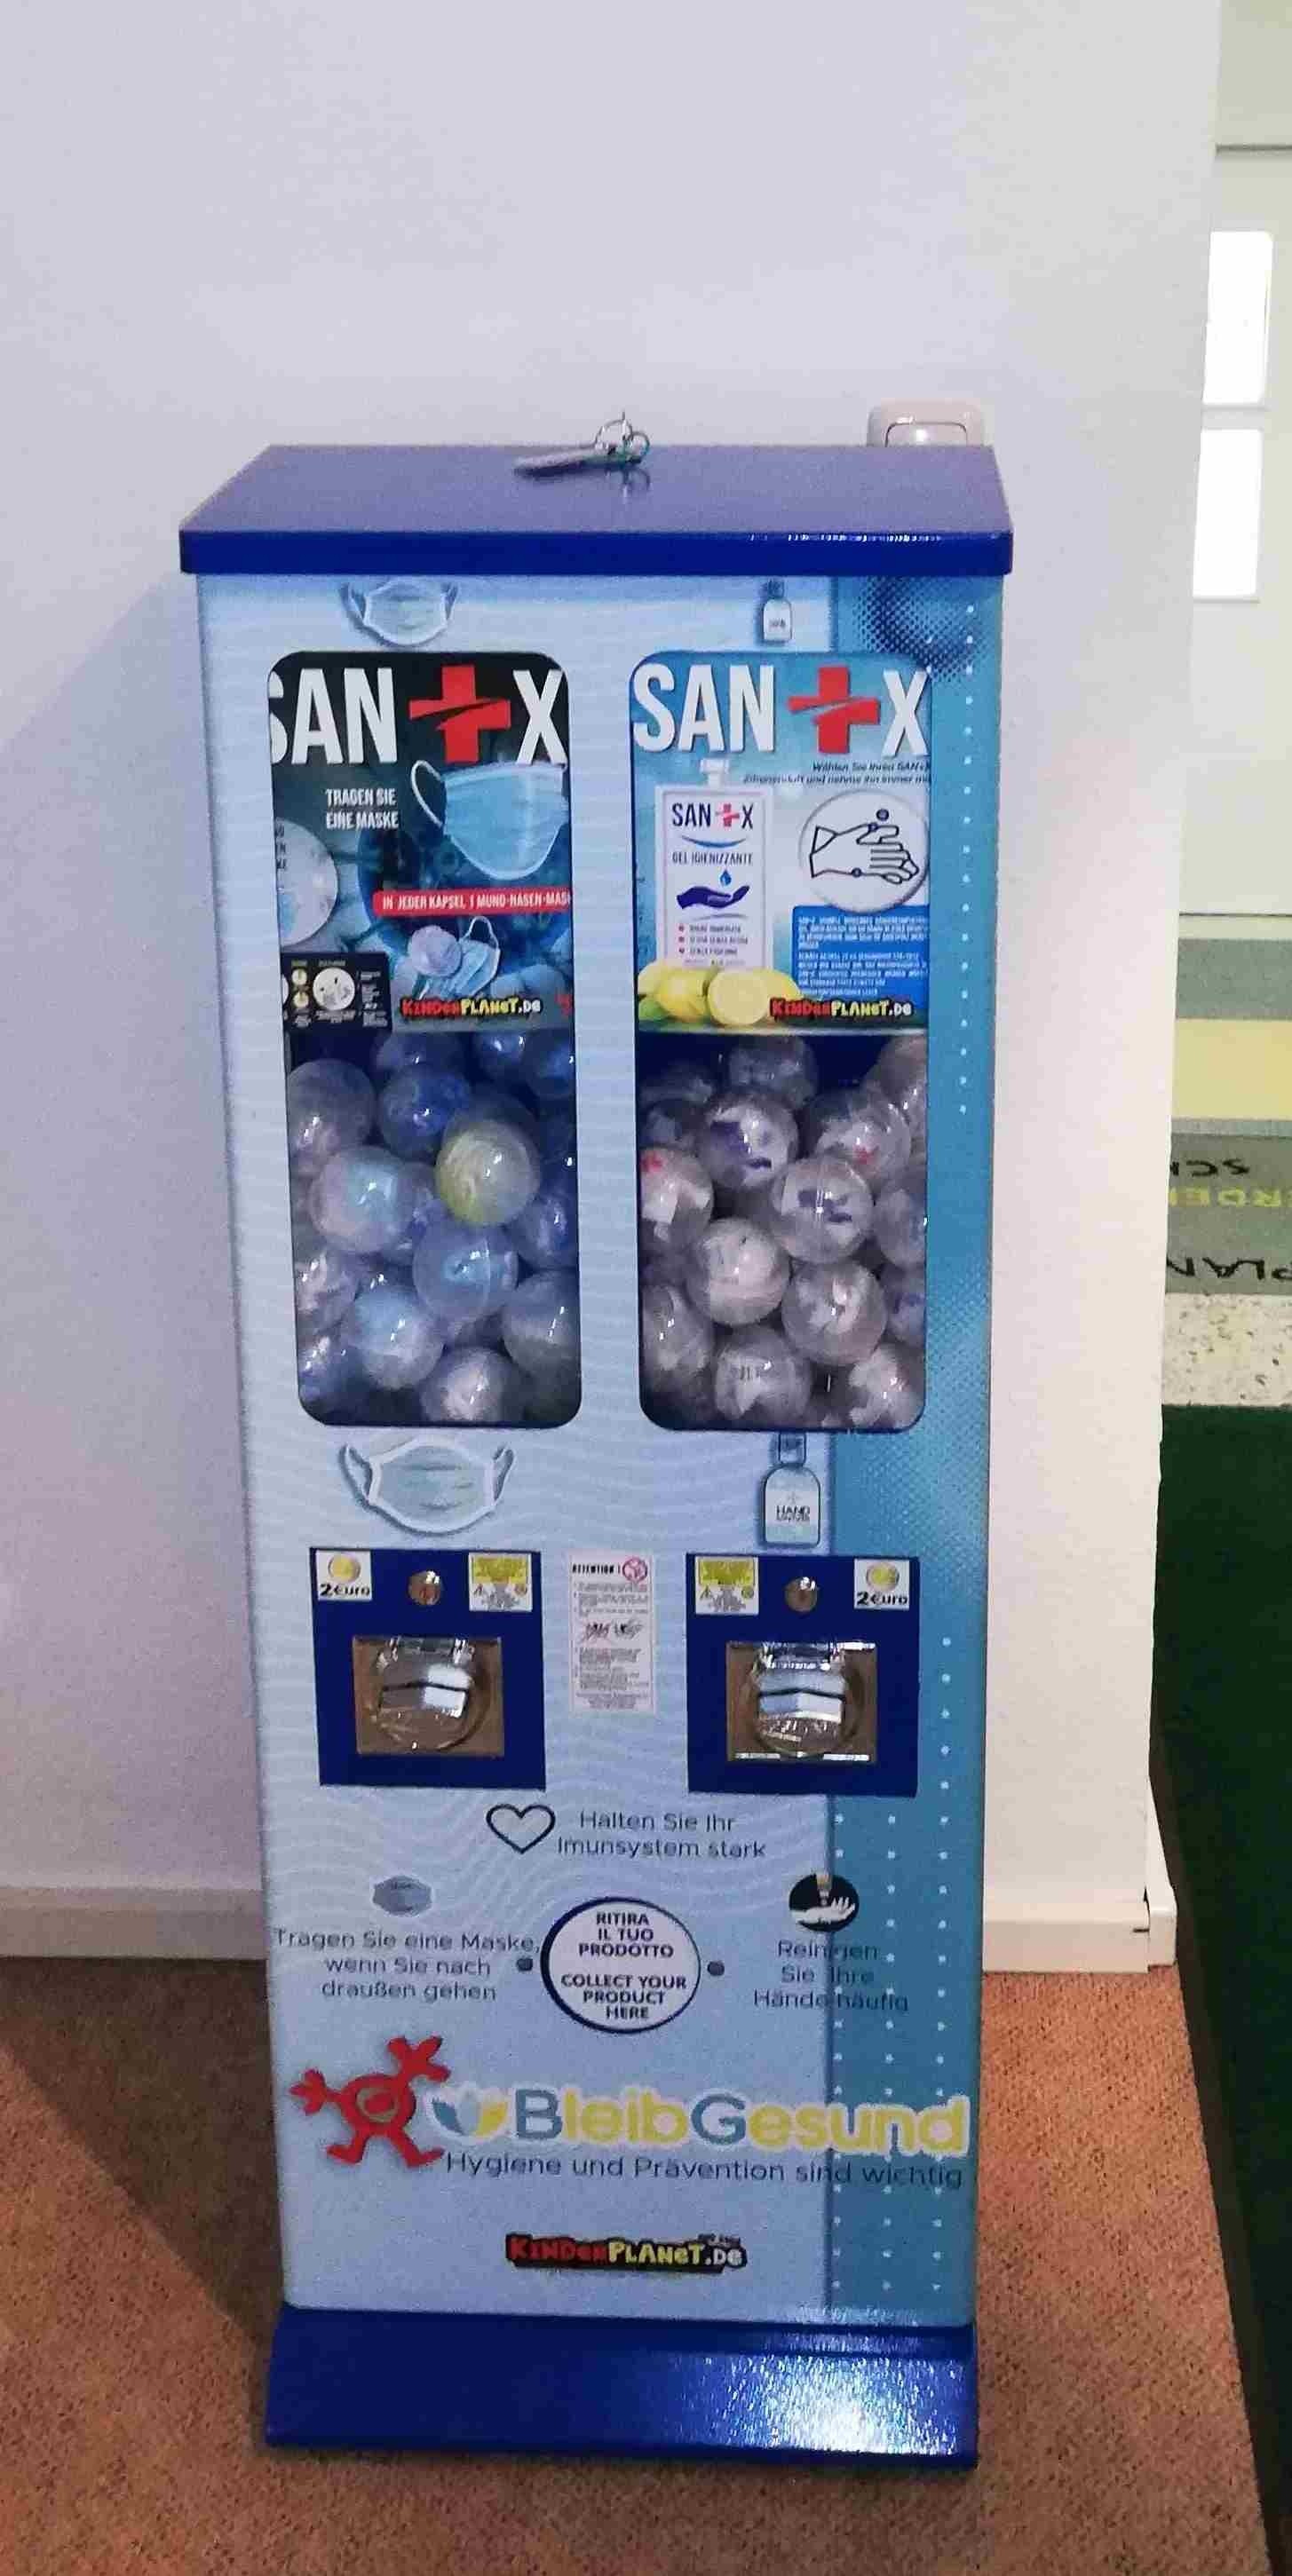 BLEIB GESUND Masken- und Hände-Desinfektionsmittel - Verkaufsautomat in blau 